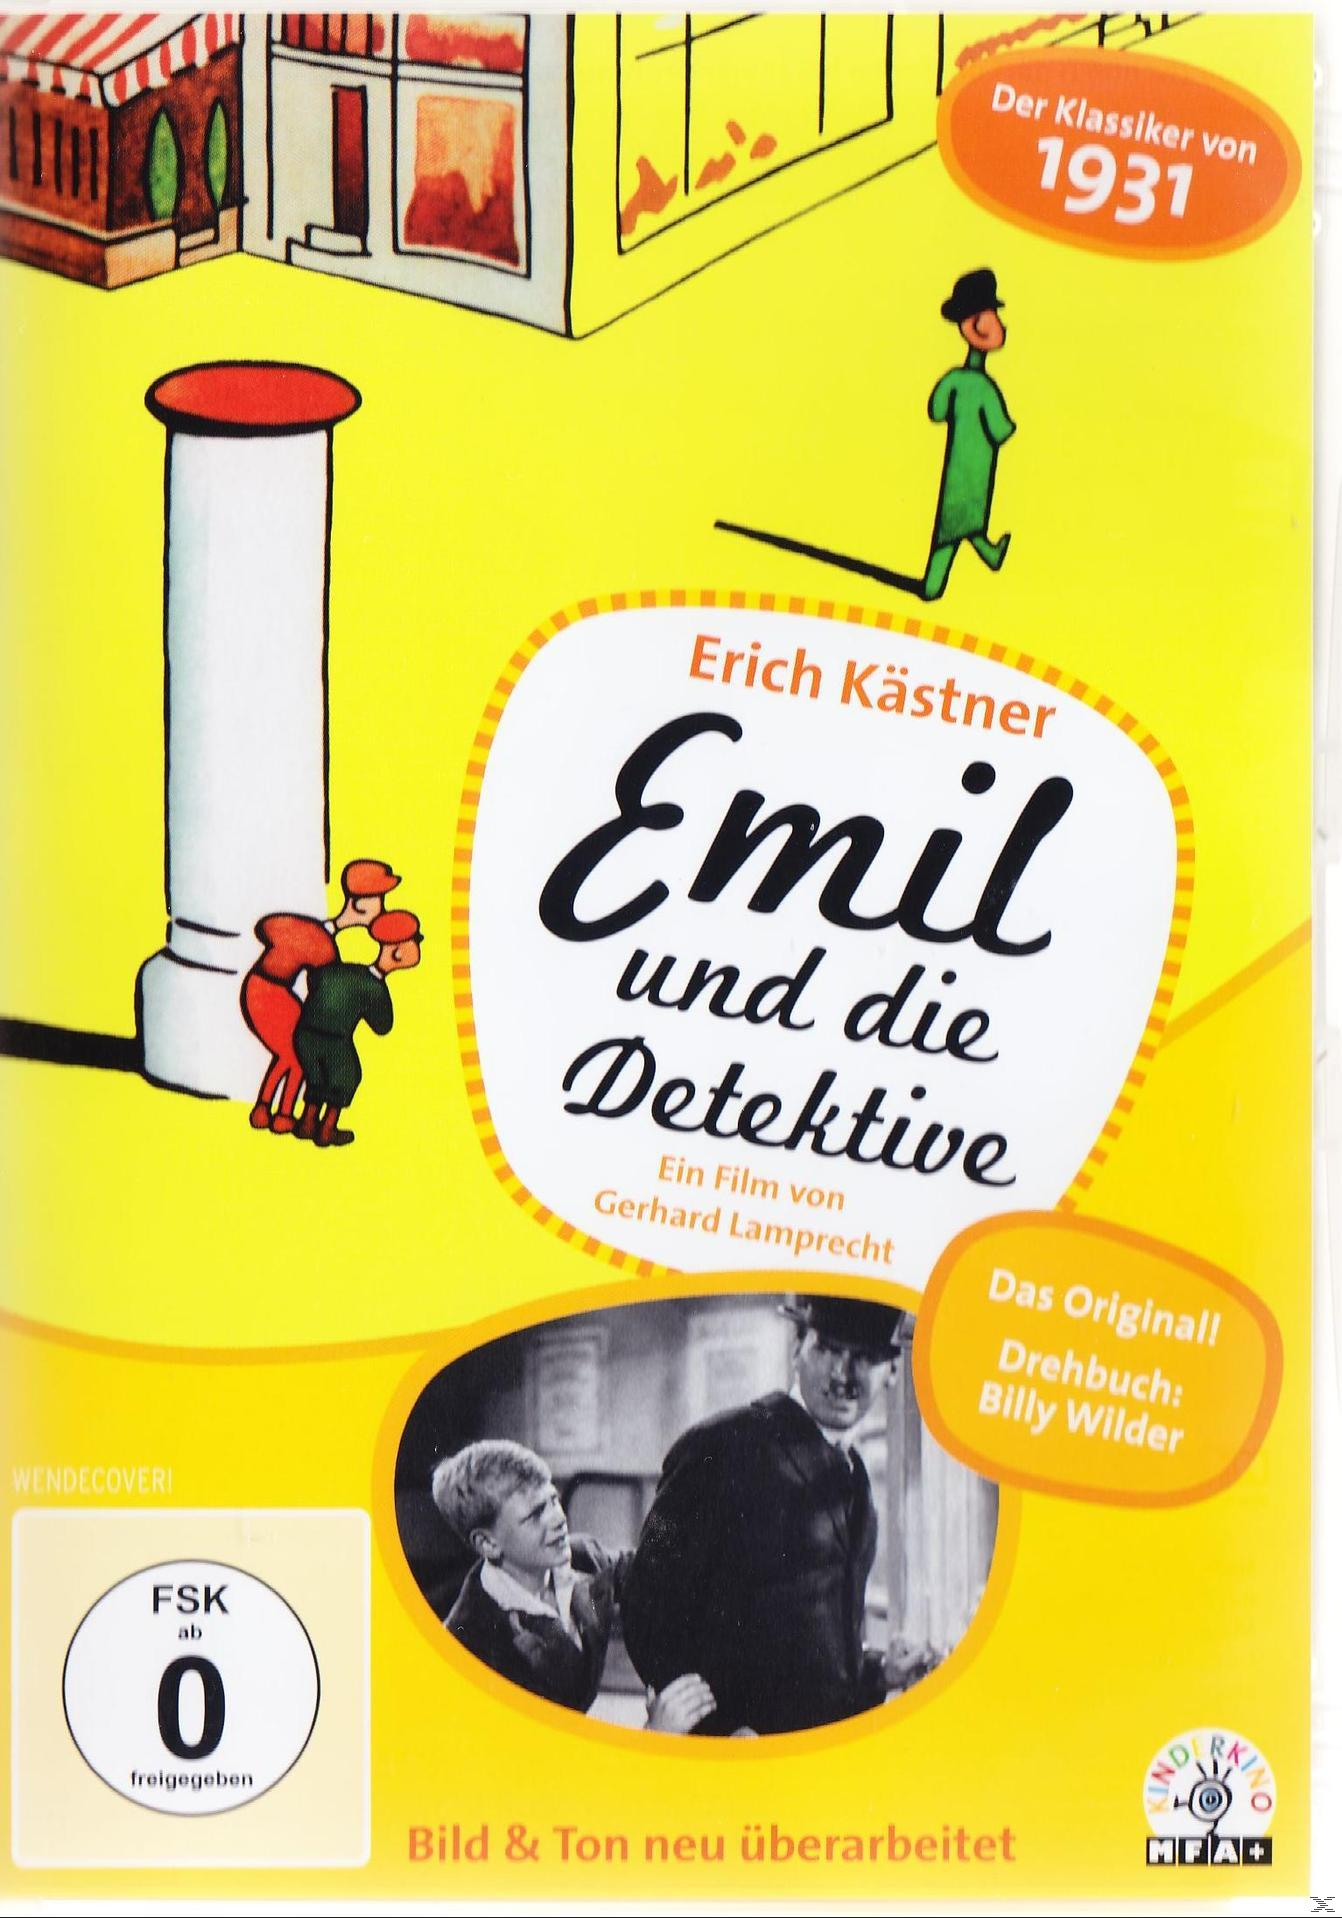 die Emil DVD und Detektive